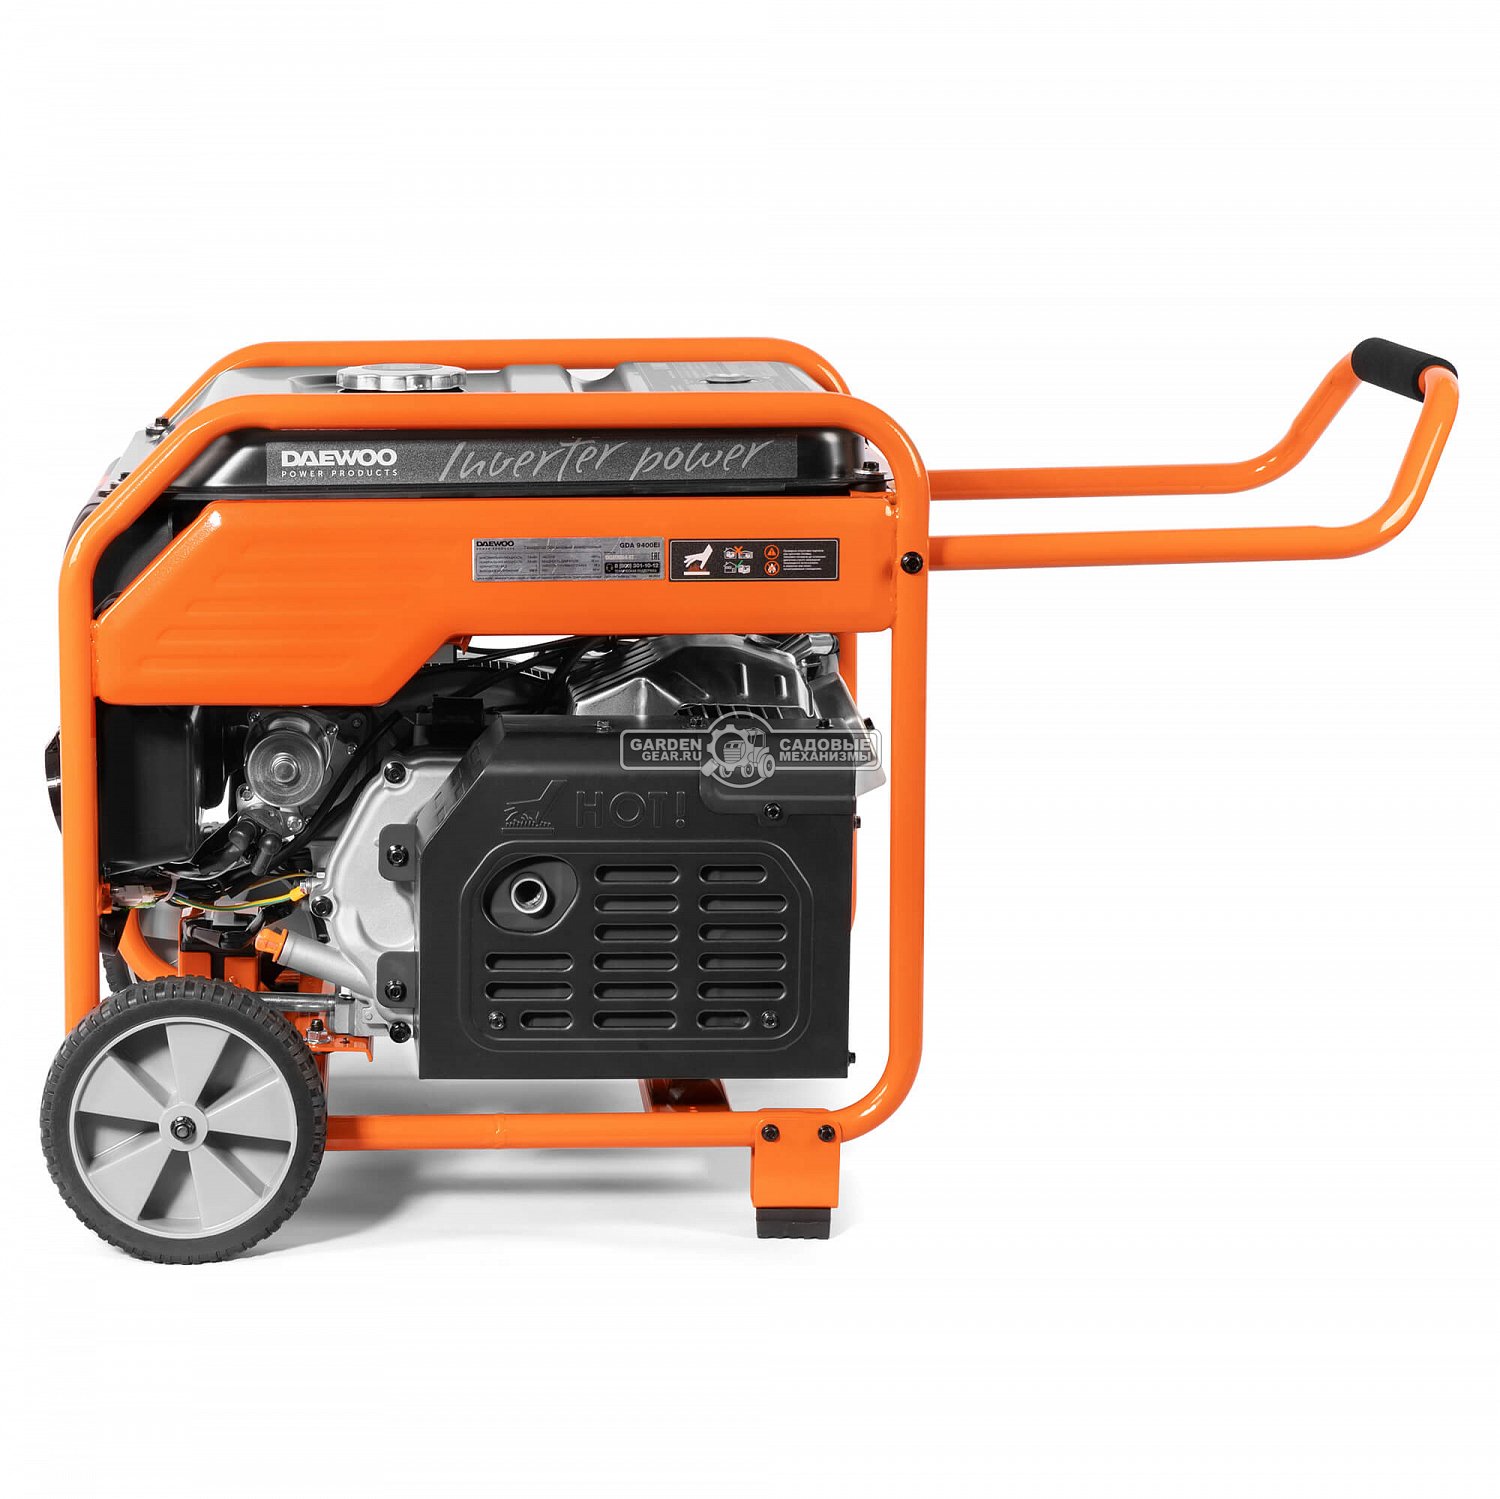 Бензиновый генератор инверторный Daewoo GDA 9400Ei с электрозапуском (PRC, 420 см3, 7,5/7,9 кВт, колеса, 16 л., 65 кг.)